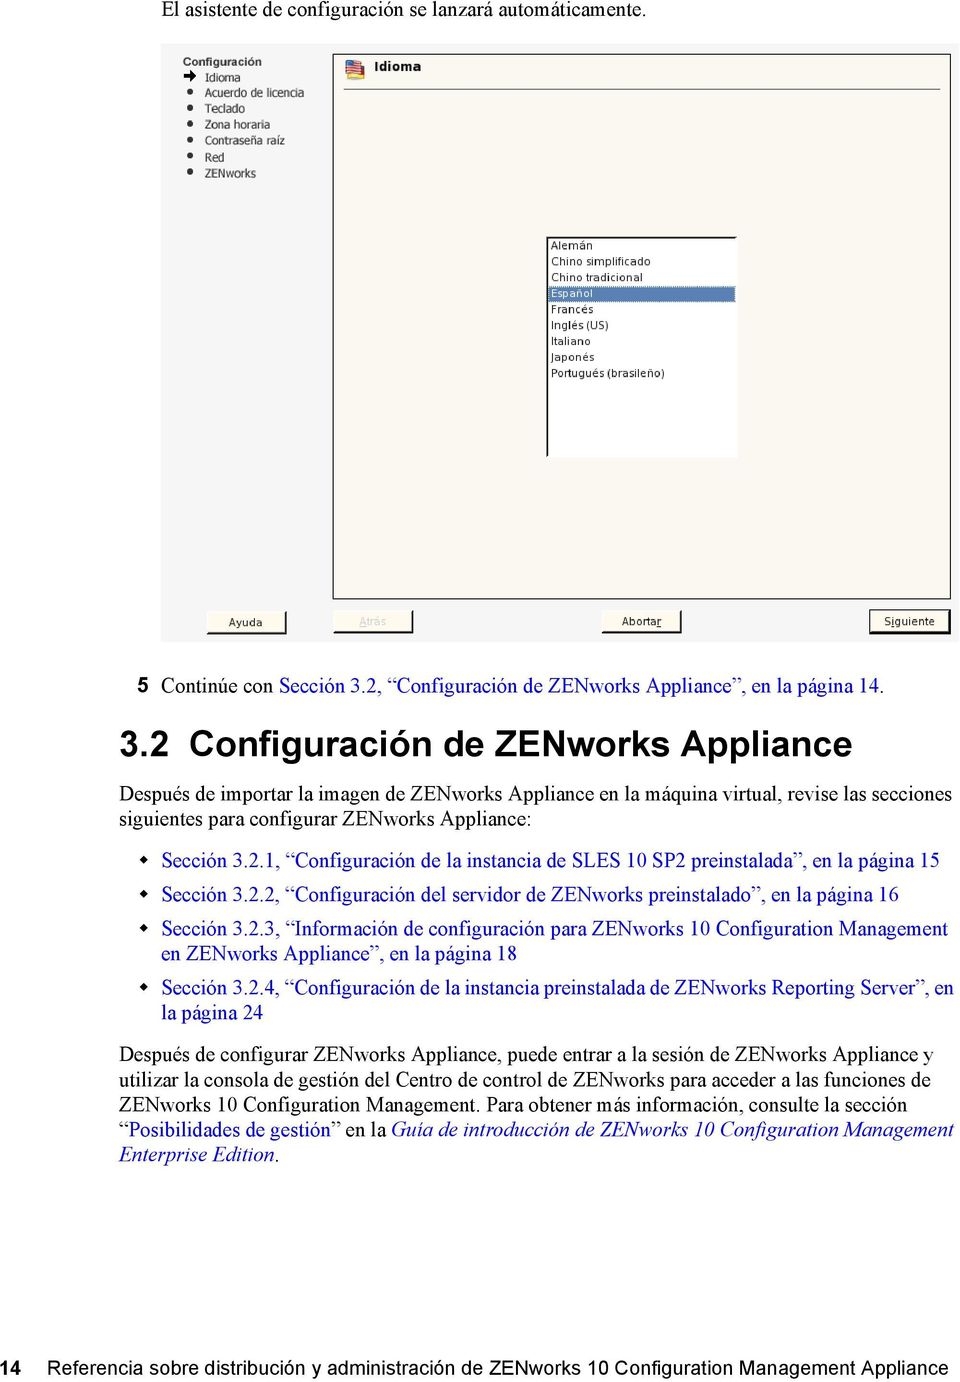 2 Configuración de ZENworks Appliance Después de importar la imagen de ZENworks Appliance en la máquina virtual, revise las secciones siguientes para configurar ZENworks Appliance: Sección 3.2.1, Configuración de la instancia de SLES 10 SP2 preinstalada, en la página 15 Sección 3.